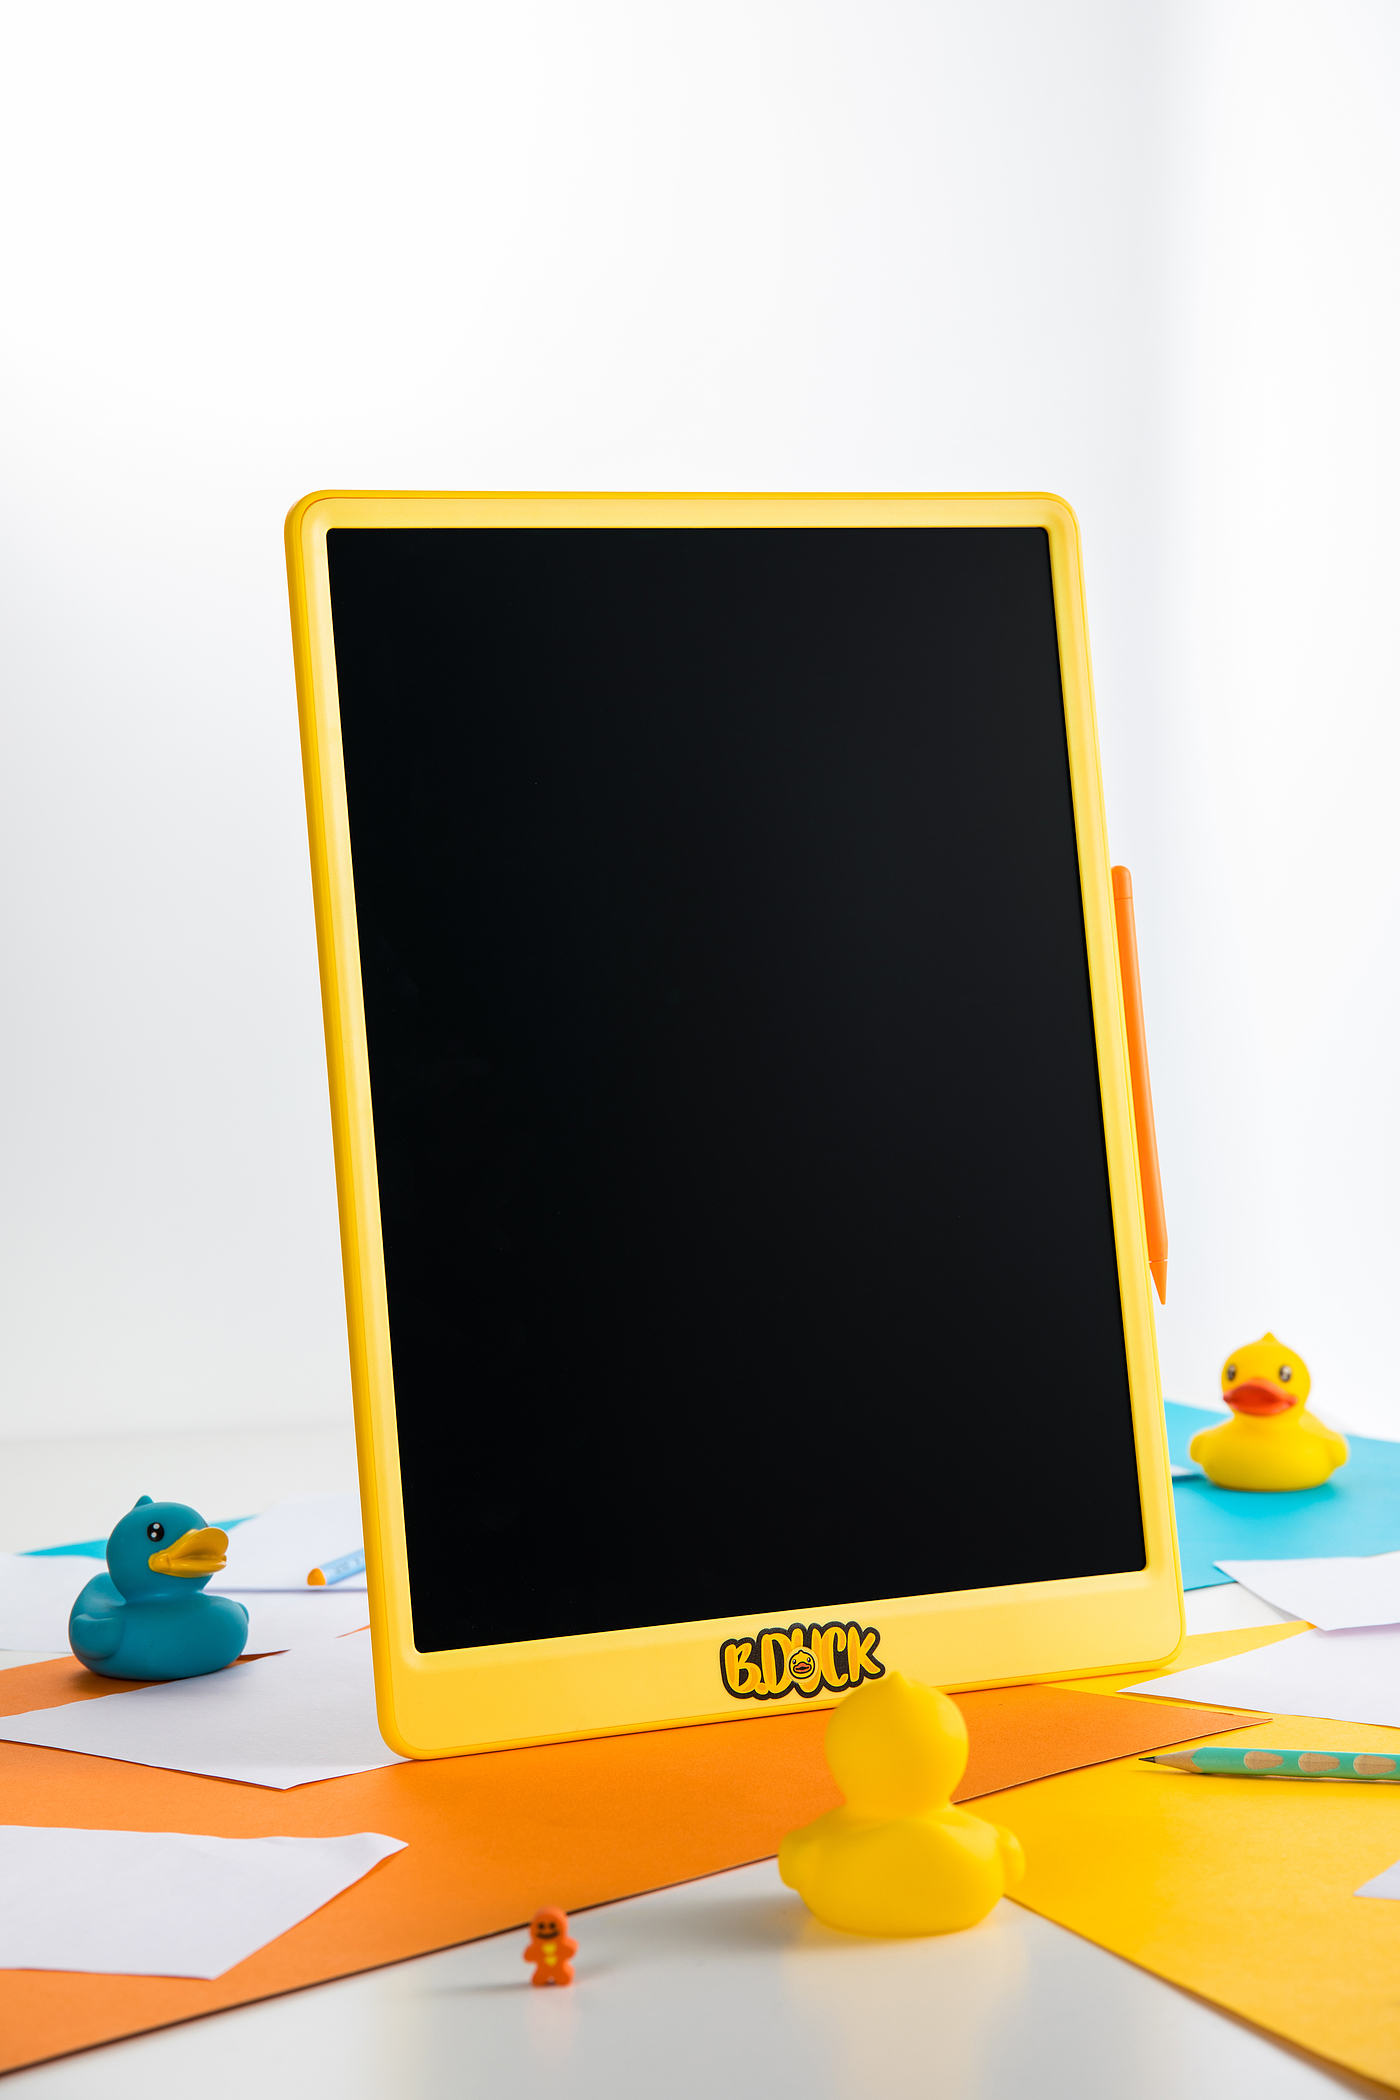 B.DUCK，小黄鸭，包装，画画，屏幕，玩具，IP，手绘板，